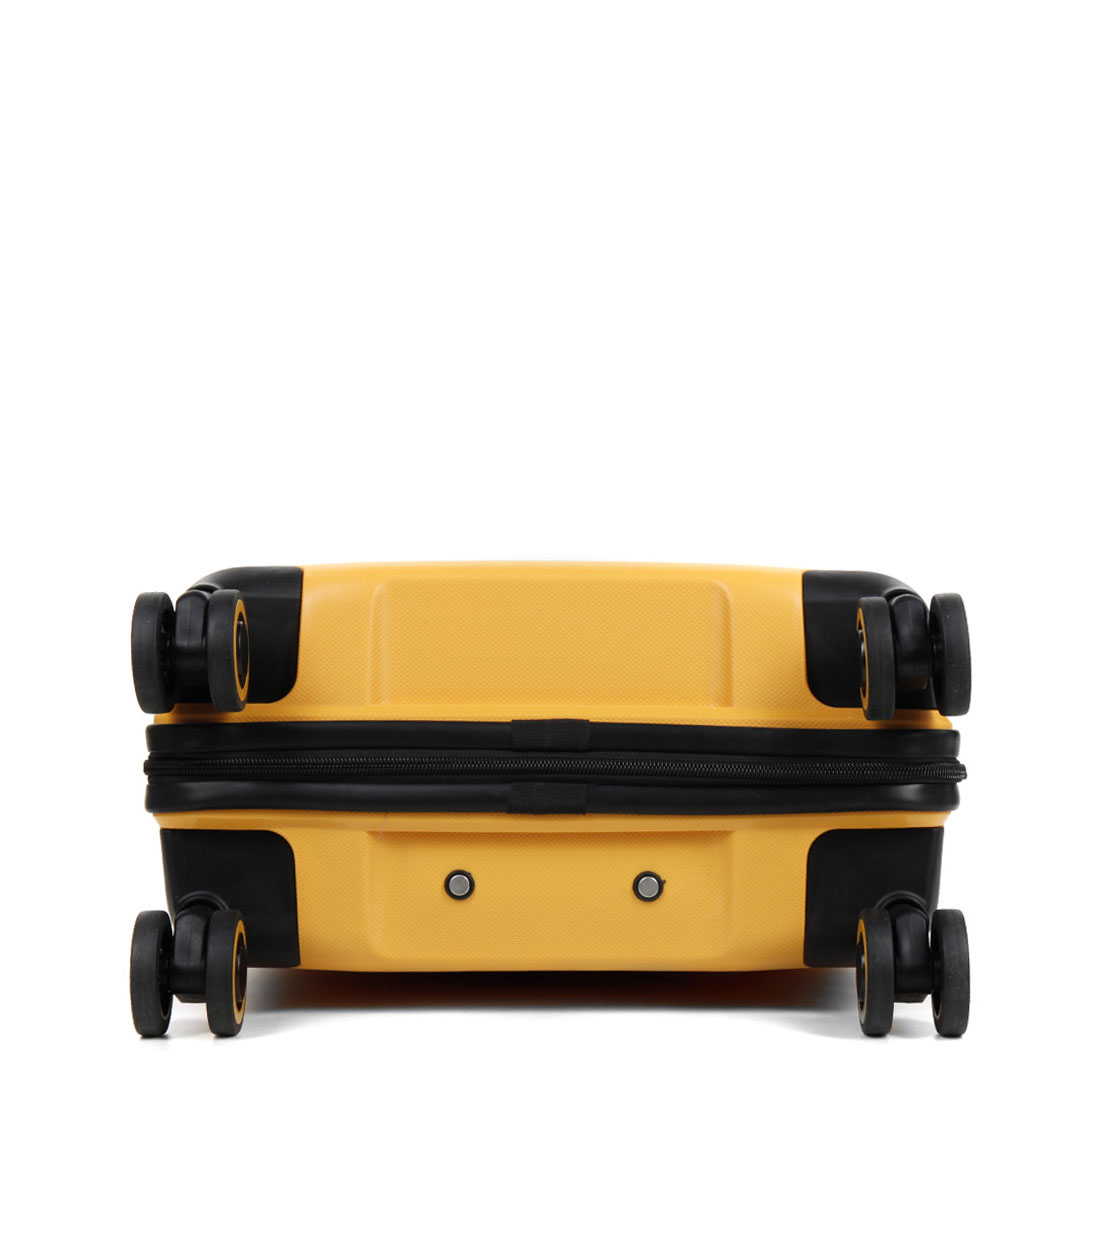 Малый чемодан American Tourister Air Move MC8*06901 (55 см) - Sunset Yellow